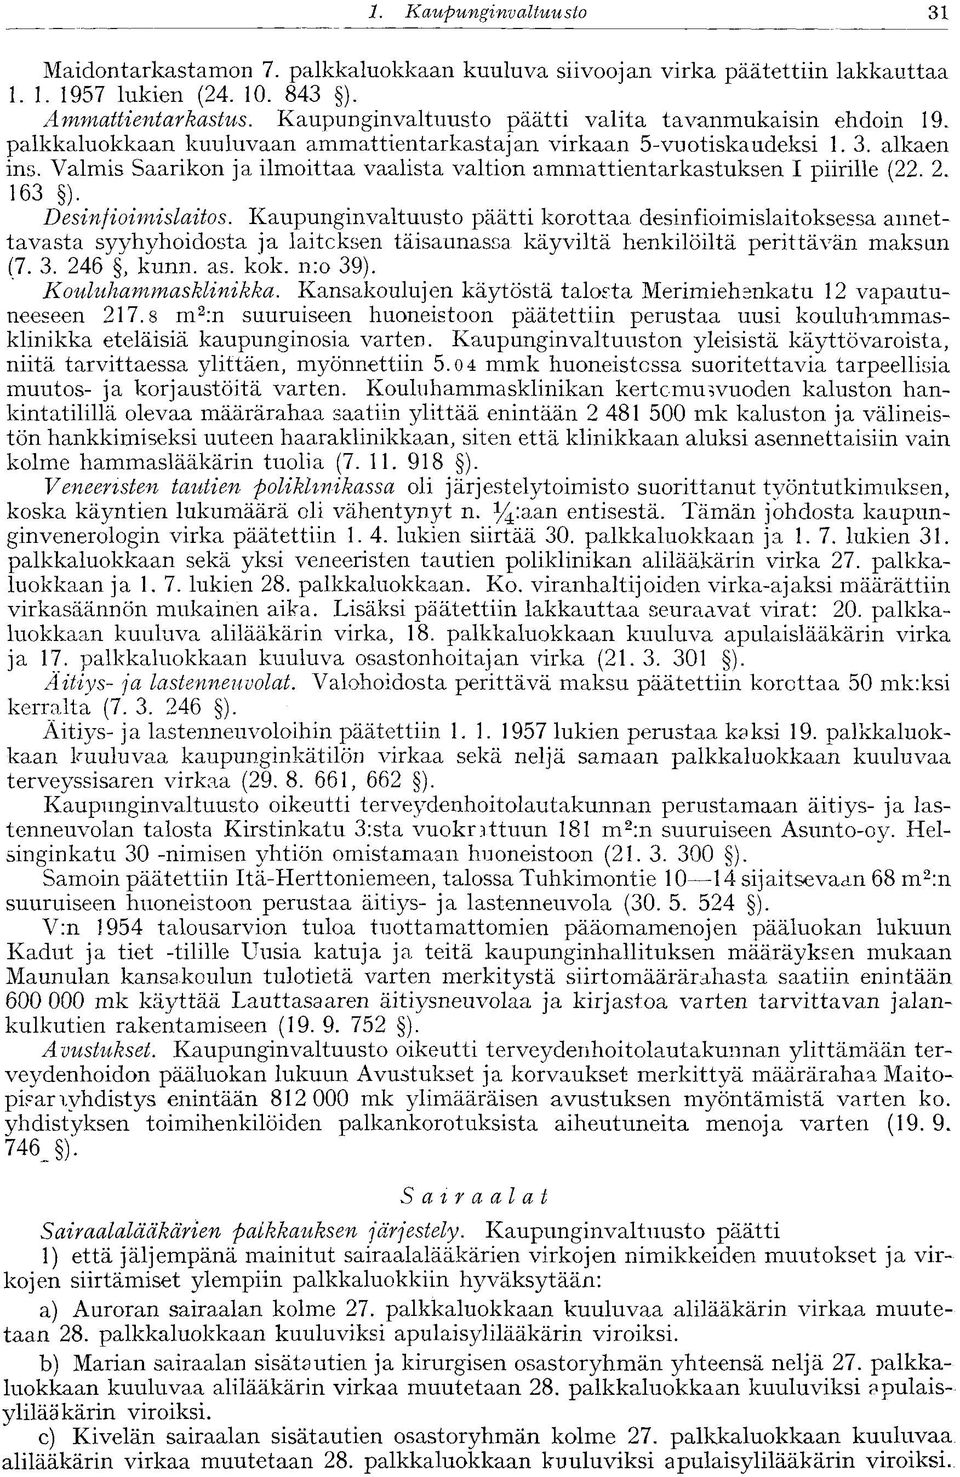 Valmis Saarikon ja ilmoittaa vaalista valtion ammattientarkastuksen I piirille (22. 2. 163 ). Desinfioimislaitos.